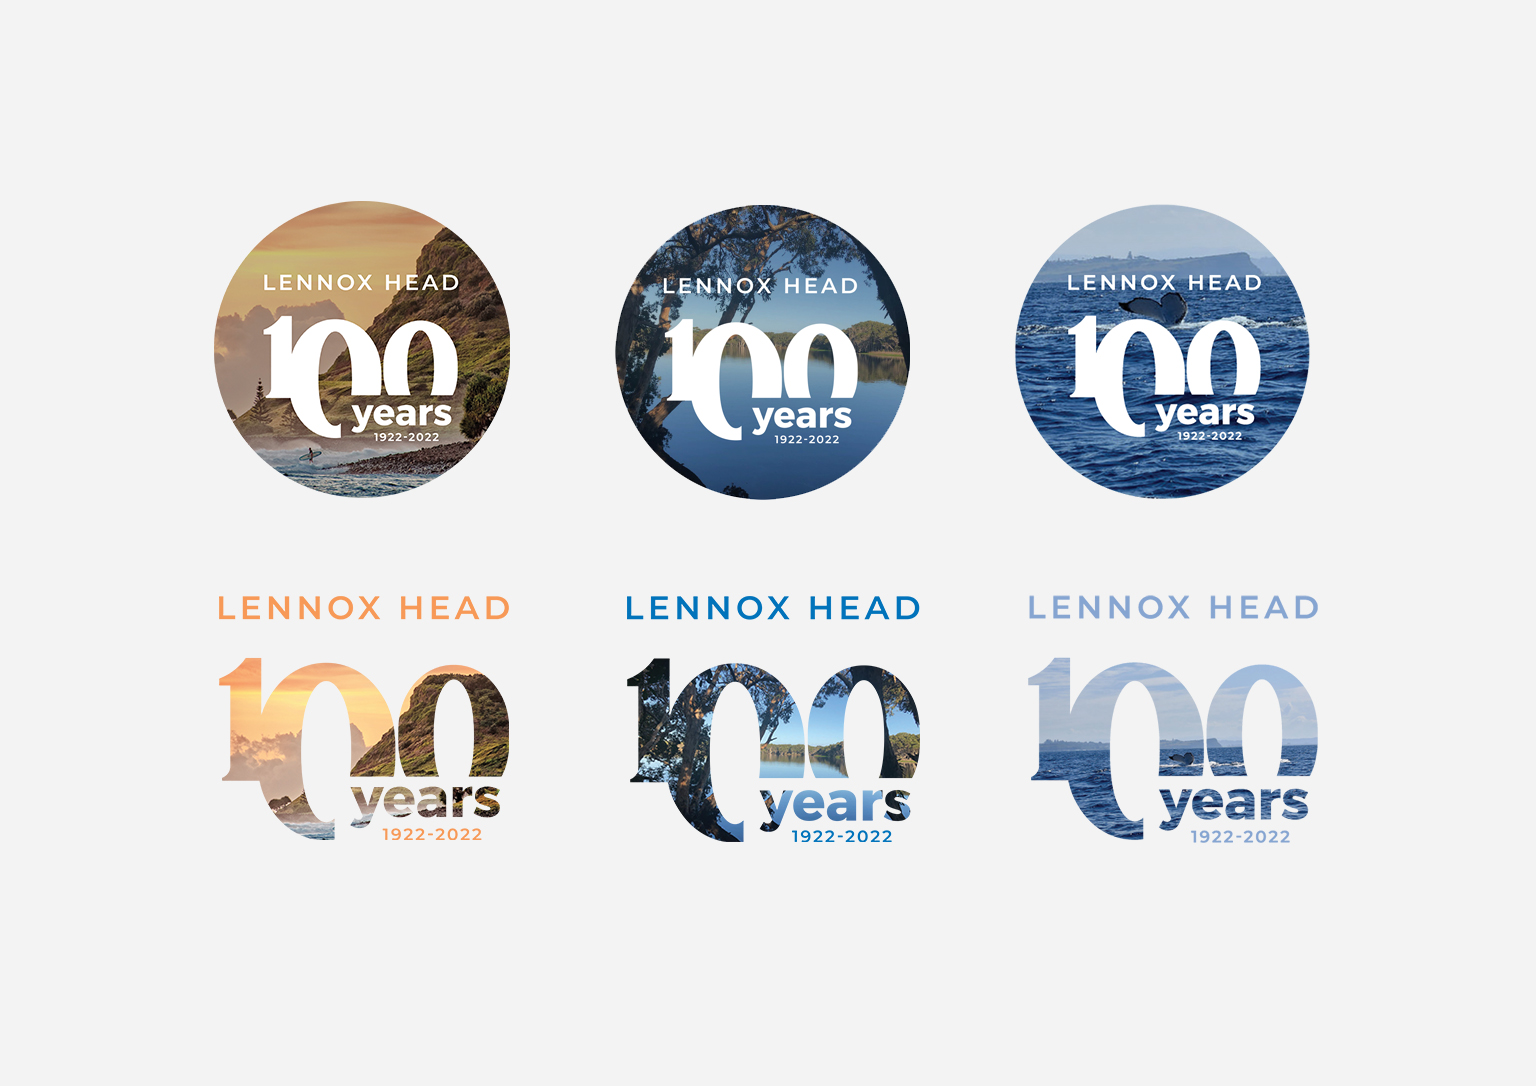 Lennox Head Centenary logo